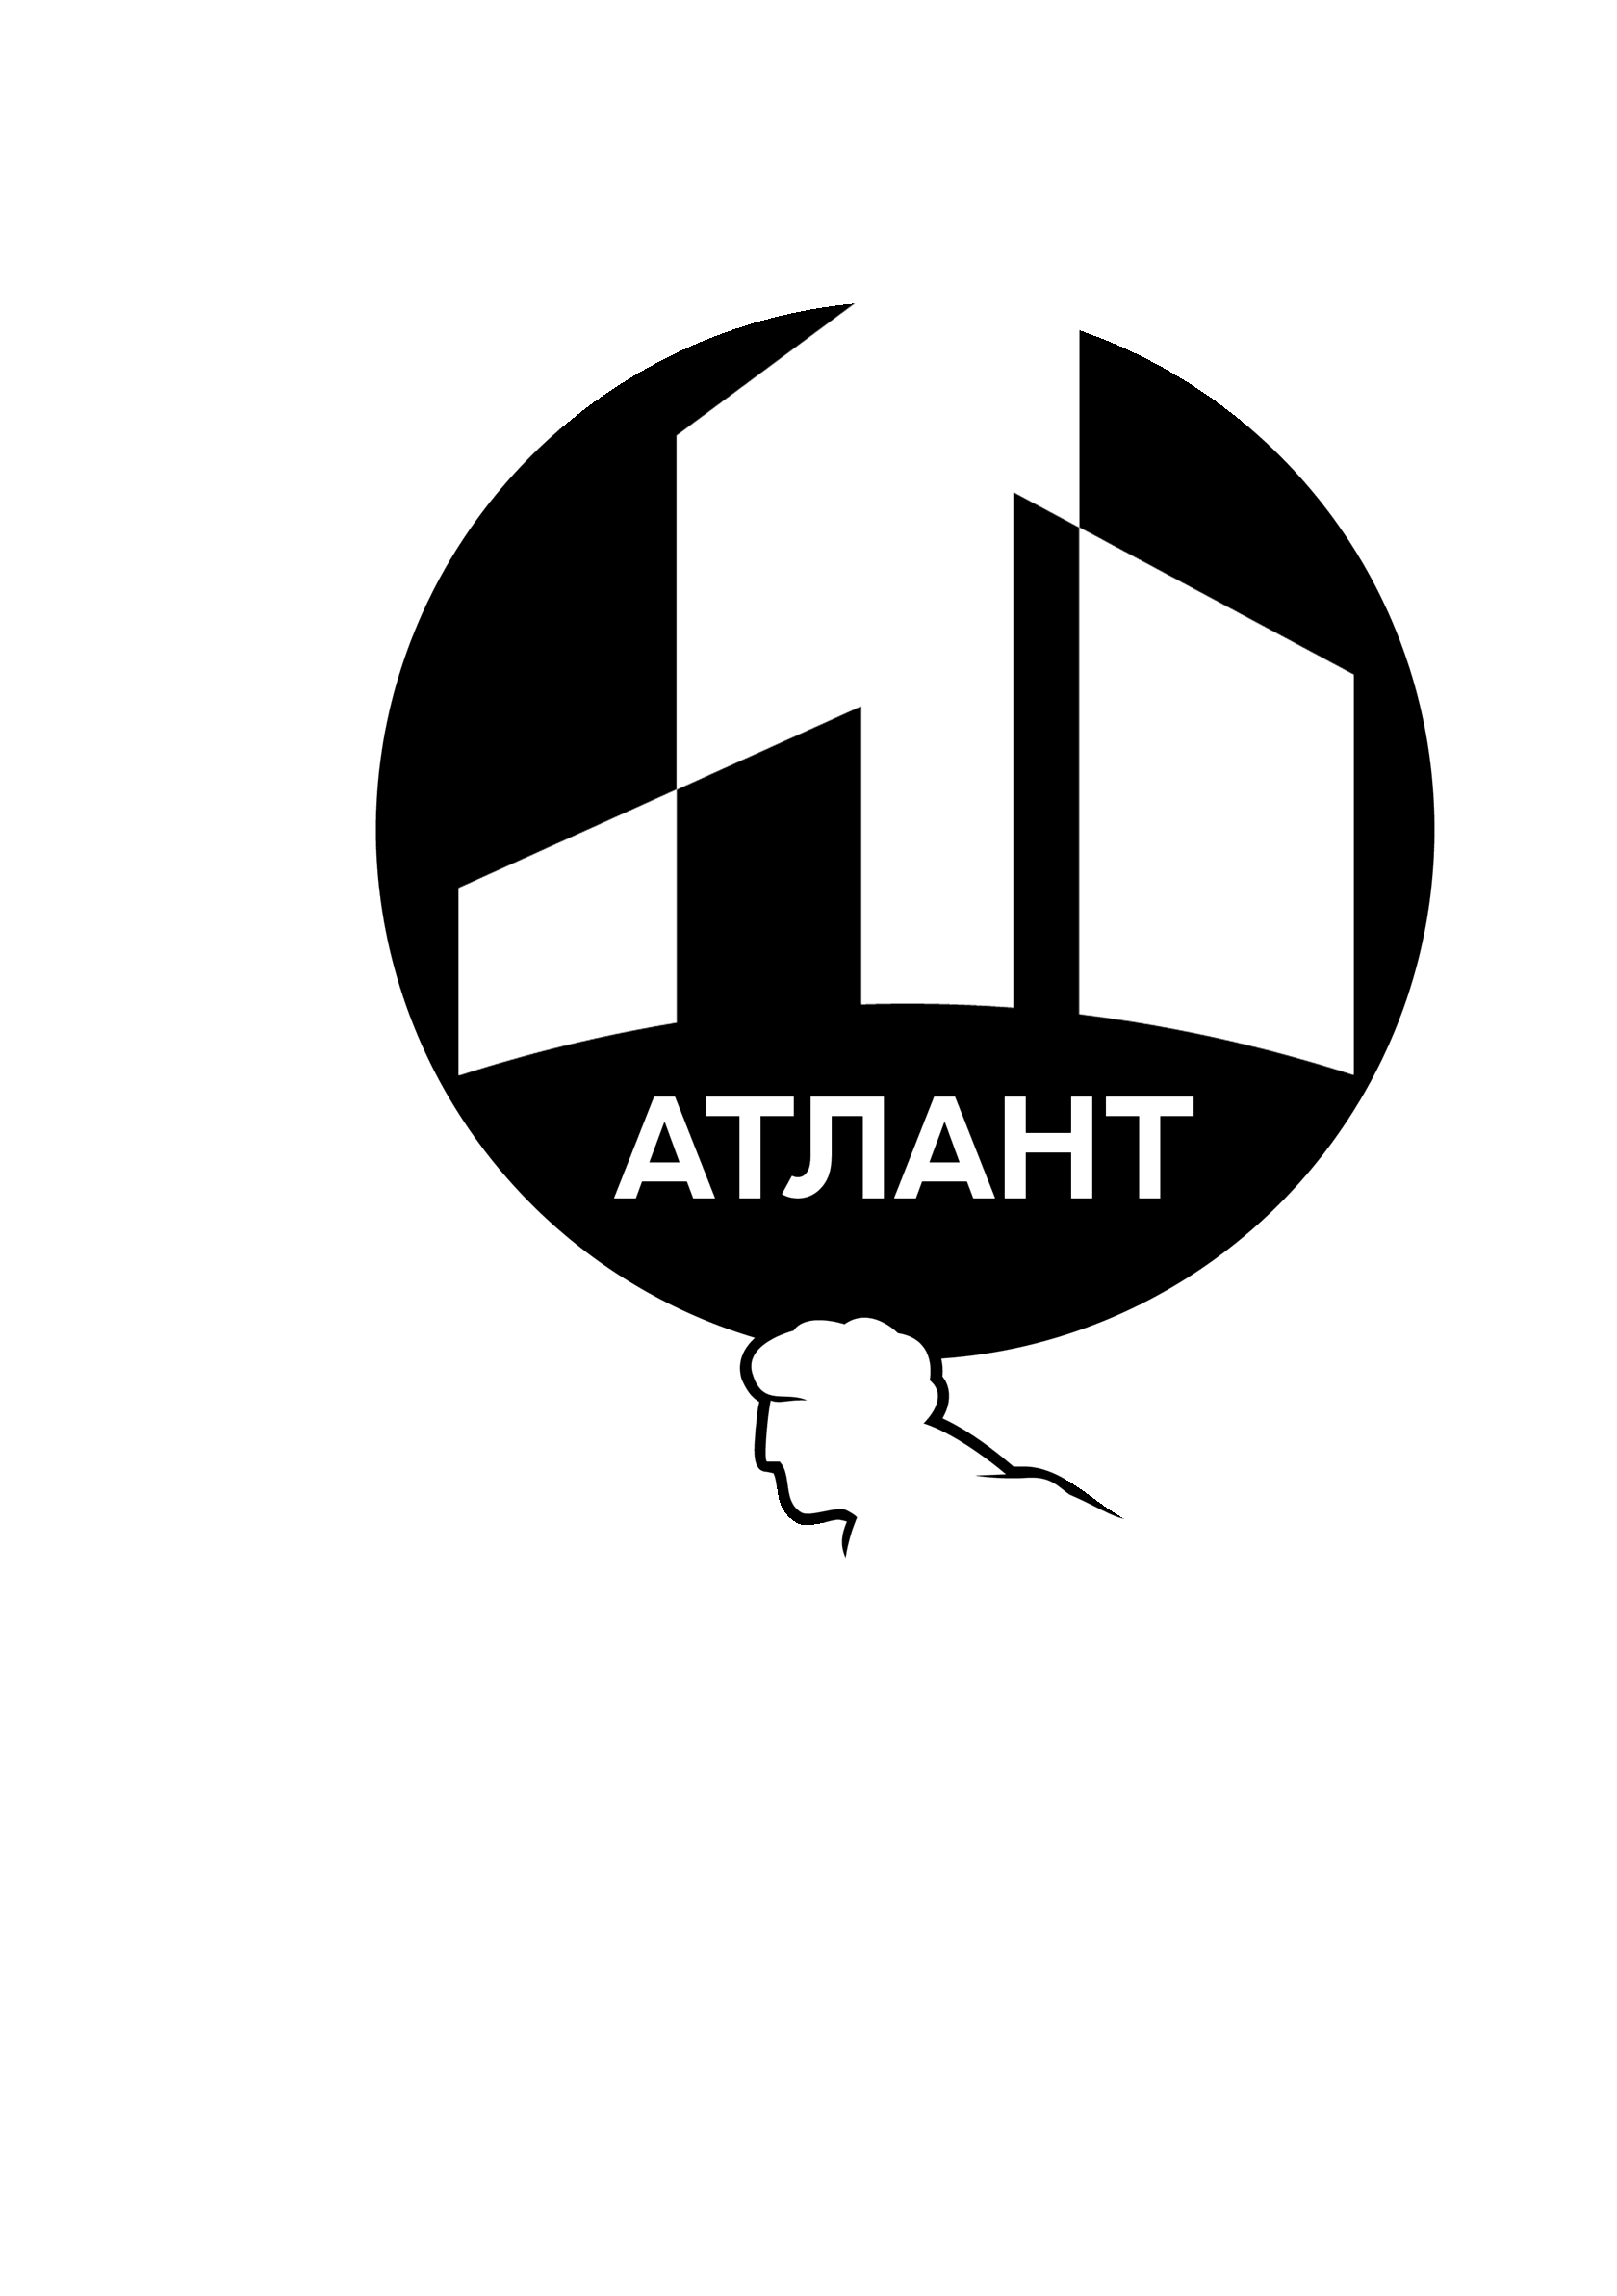  ООО "Атлант" 